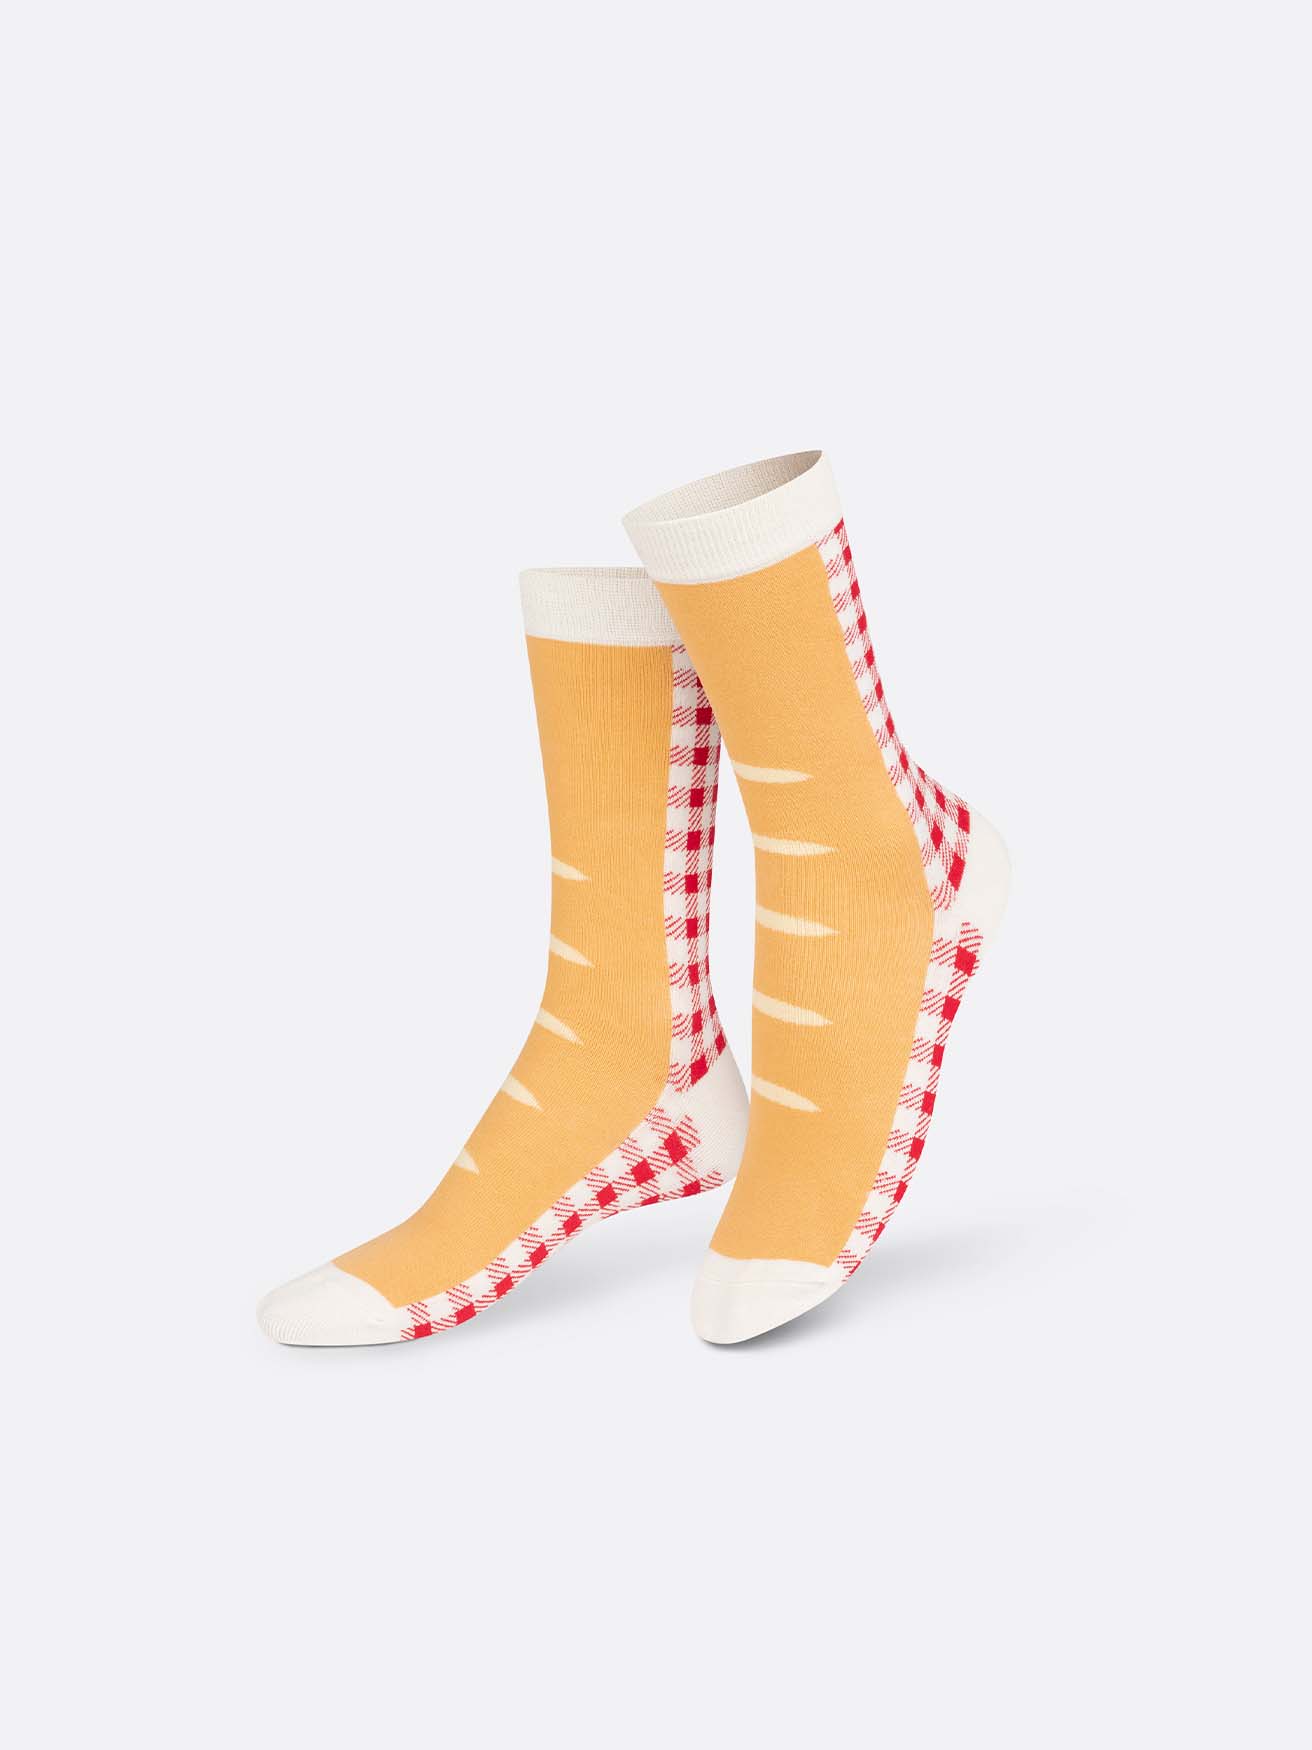 French Baguette Socks